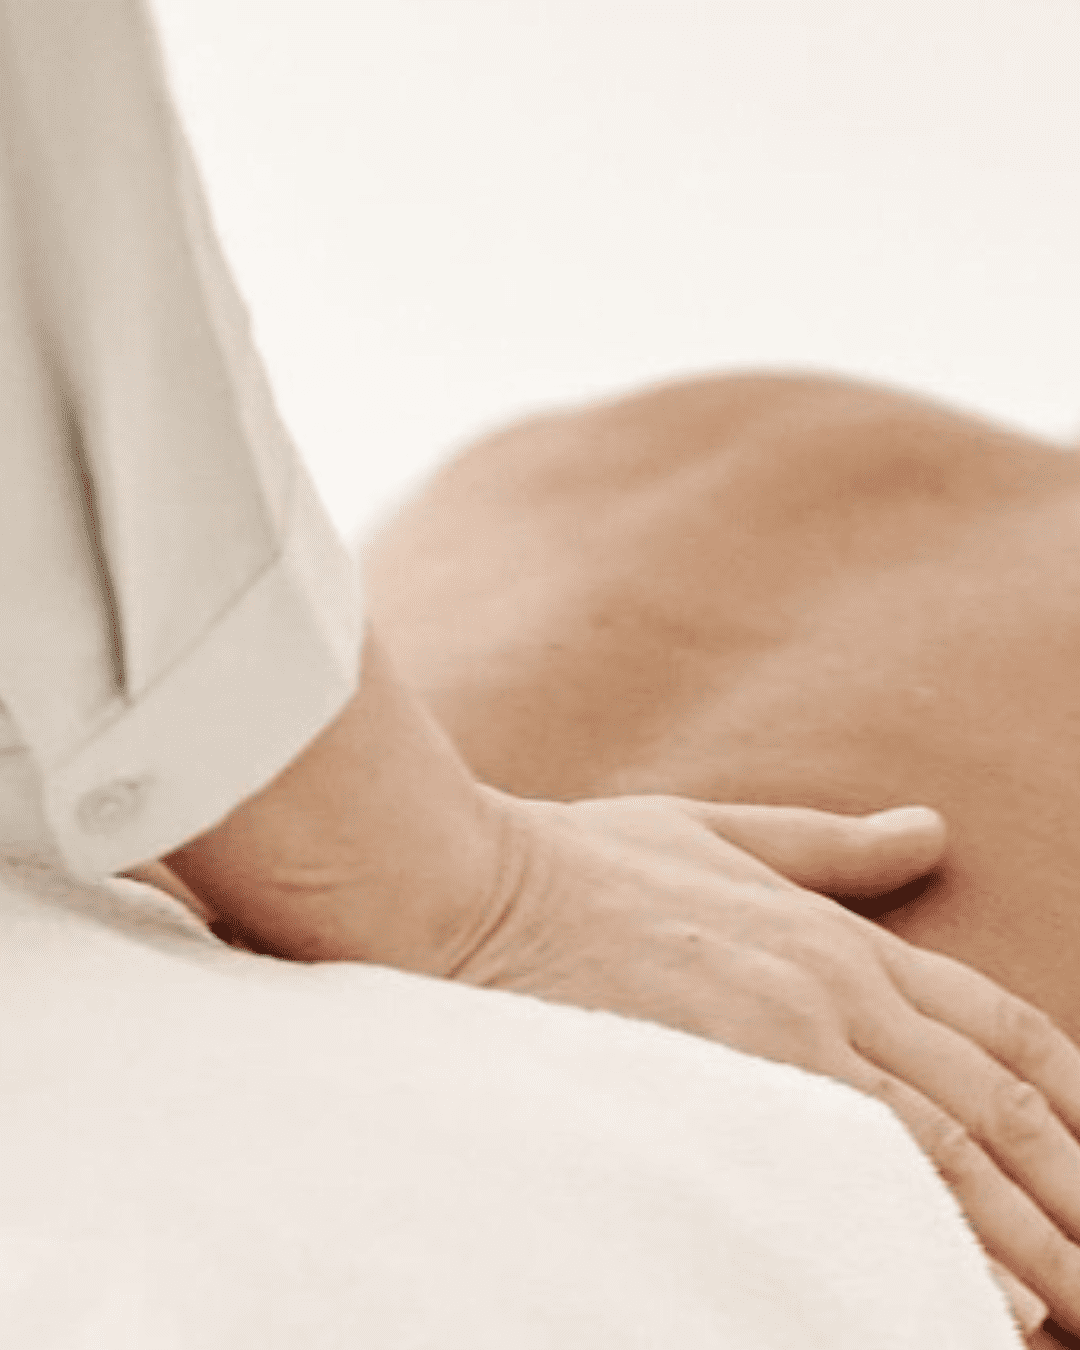 Article : On a testé pour vous : le soin du dos la Vague Relaxante